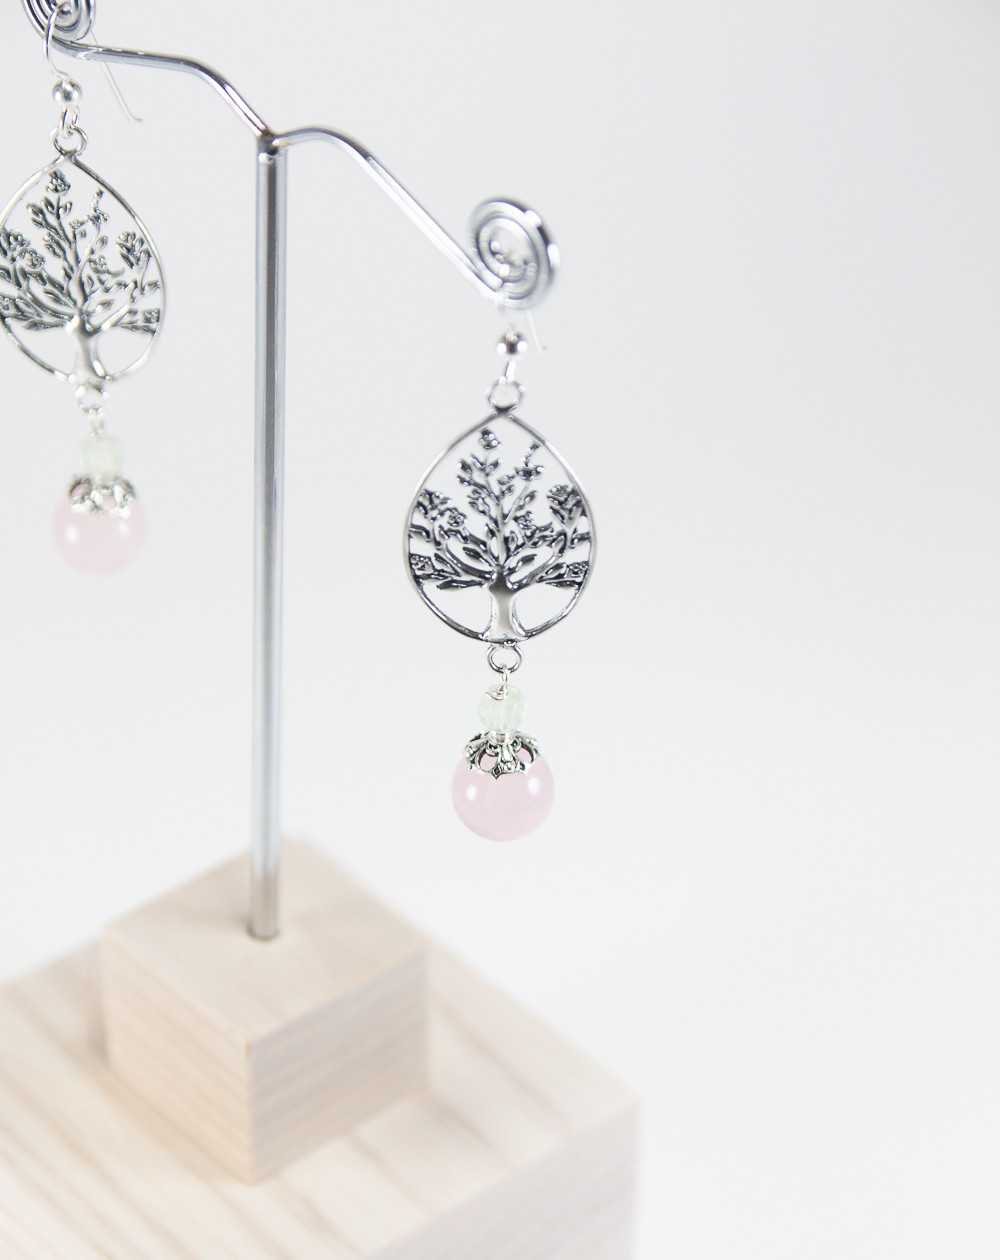 Boucles d'oreilles arbre de vie quartz rose et préhnite, Sanùk Création